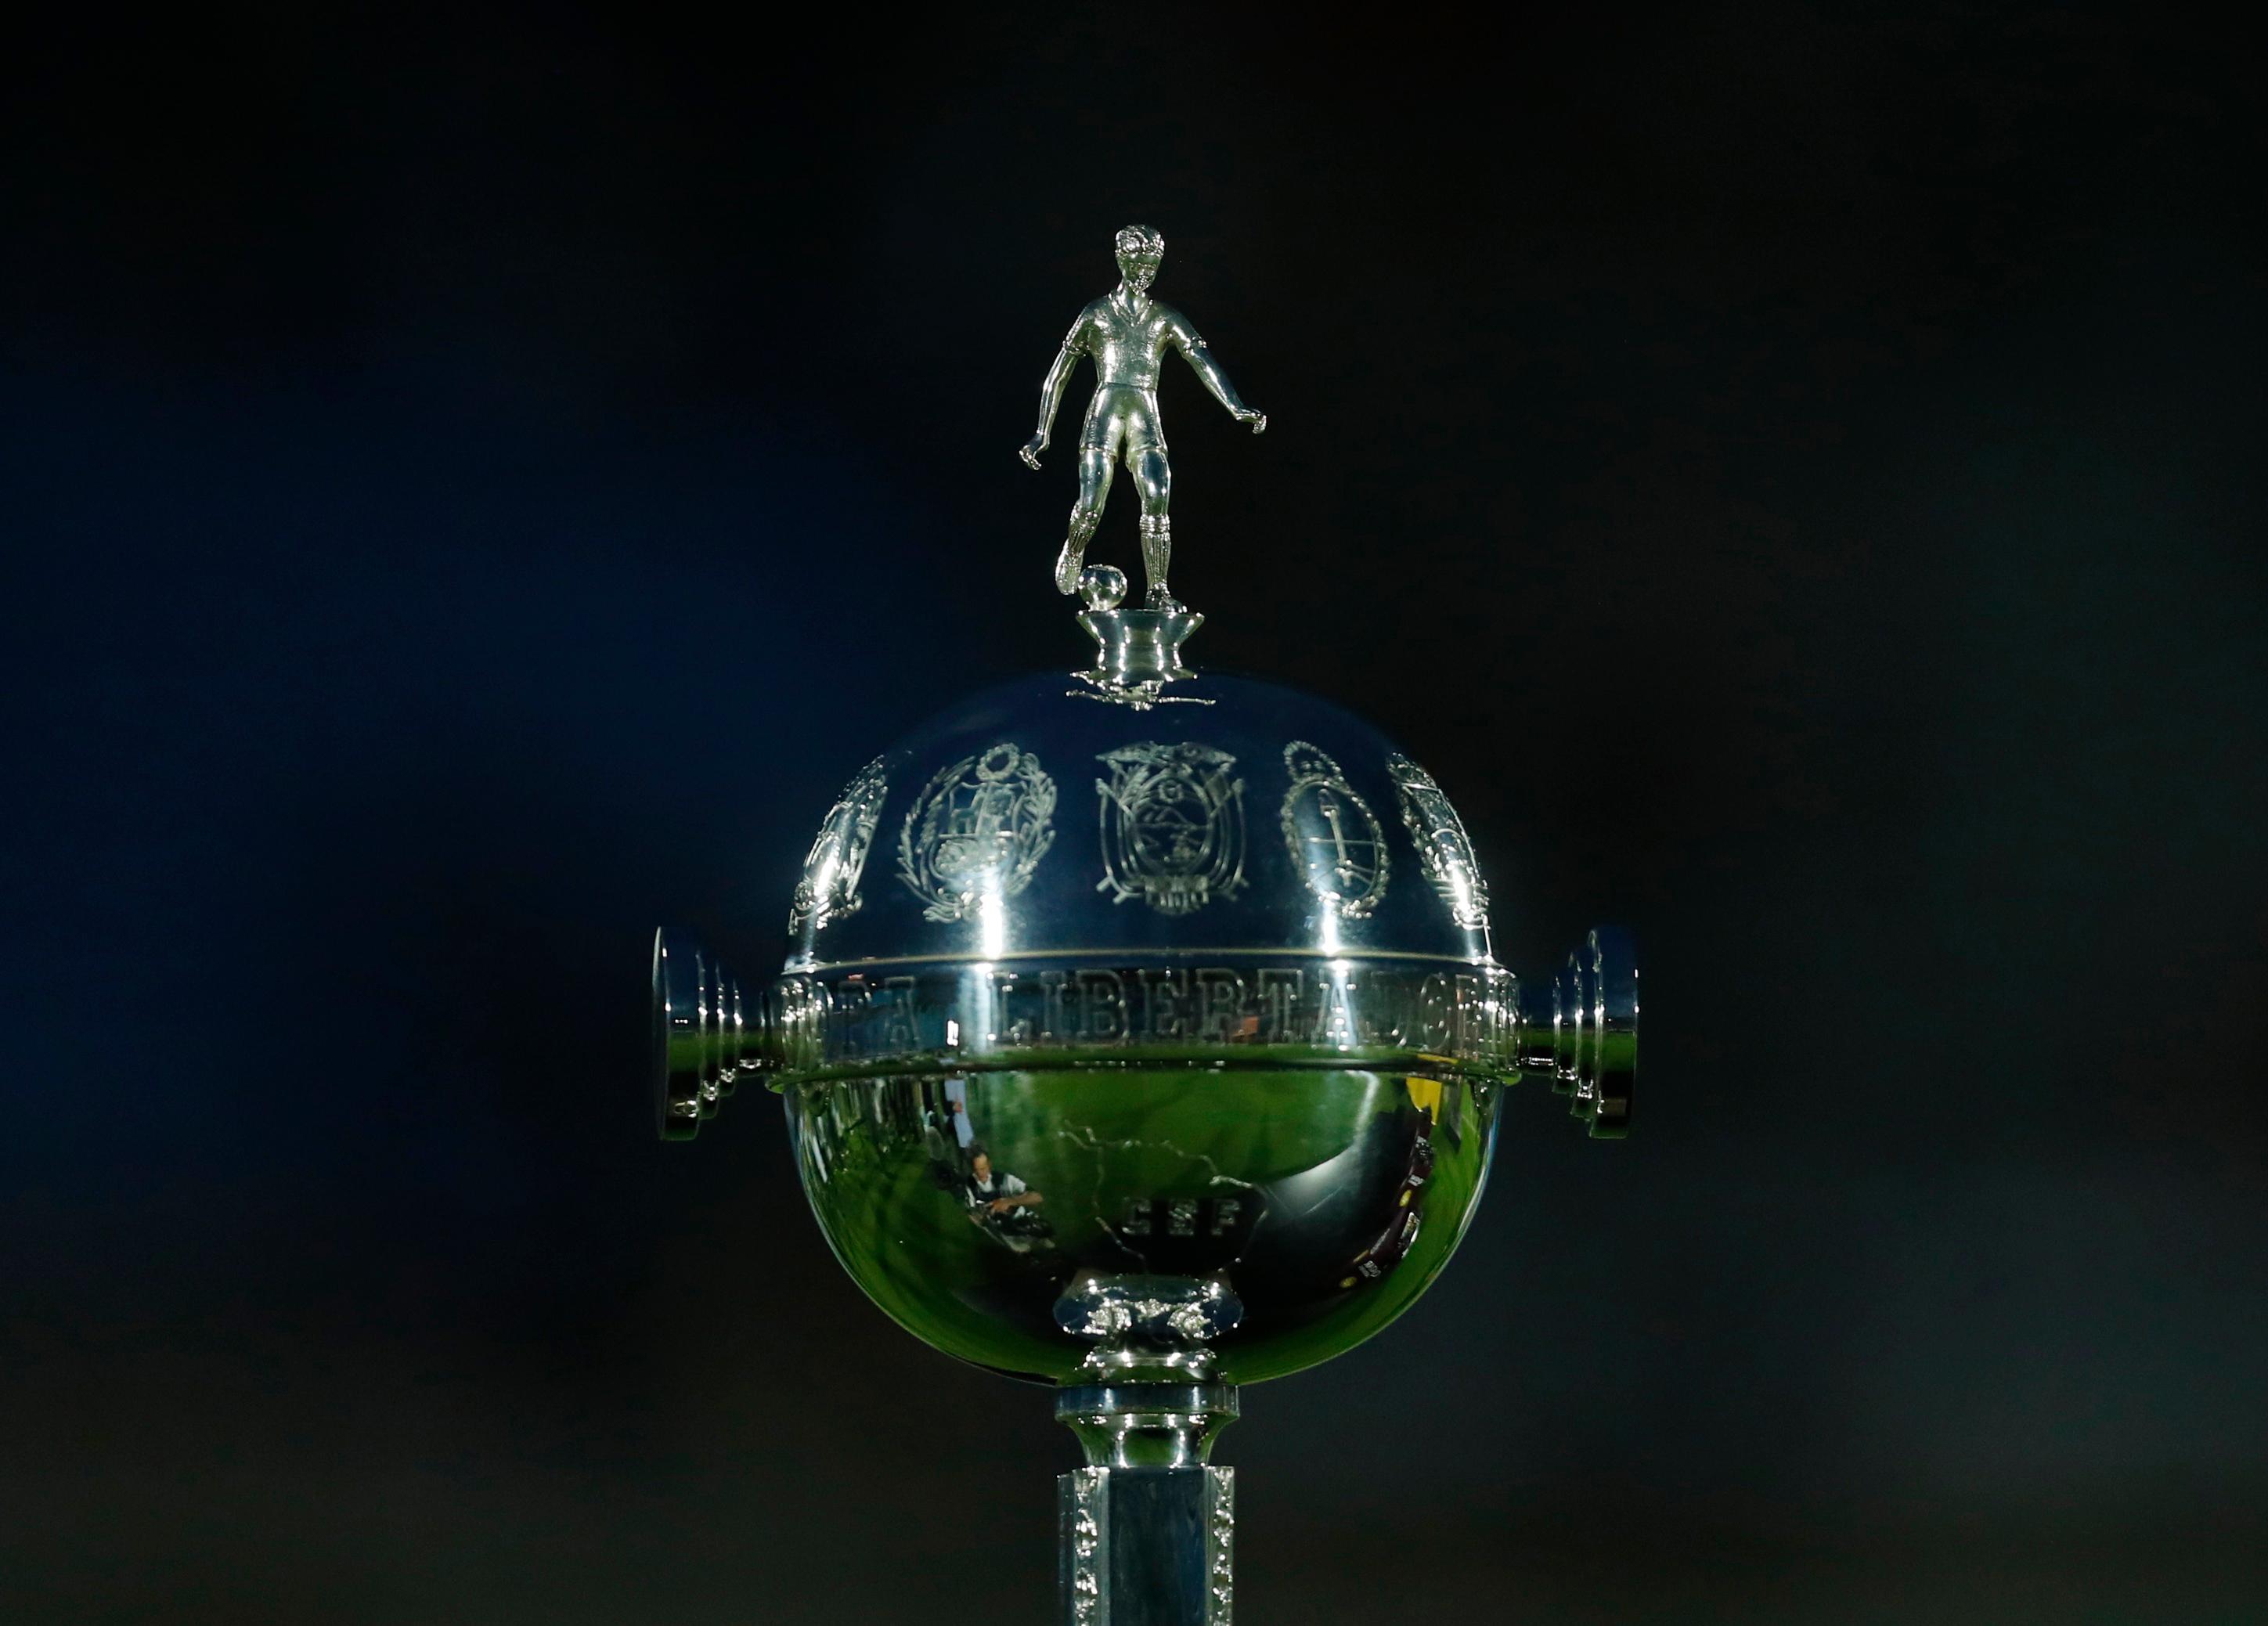 ️⚽️JOGOS DE HOJE LIBERTADORES 2023, Jogos de Hoje Copa Libertadores, 01/08/2023